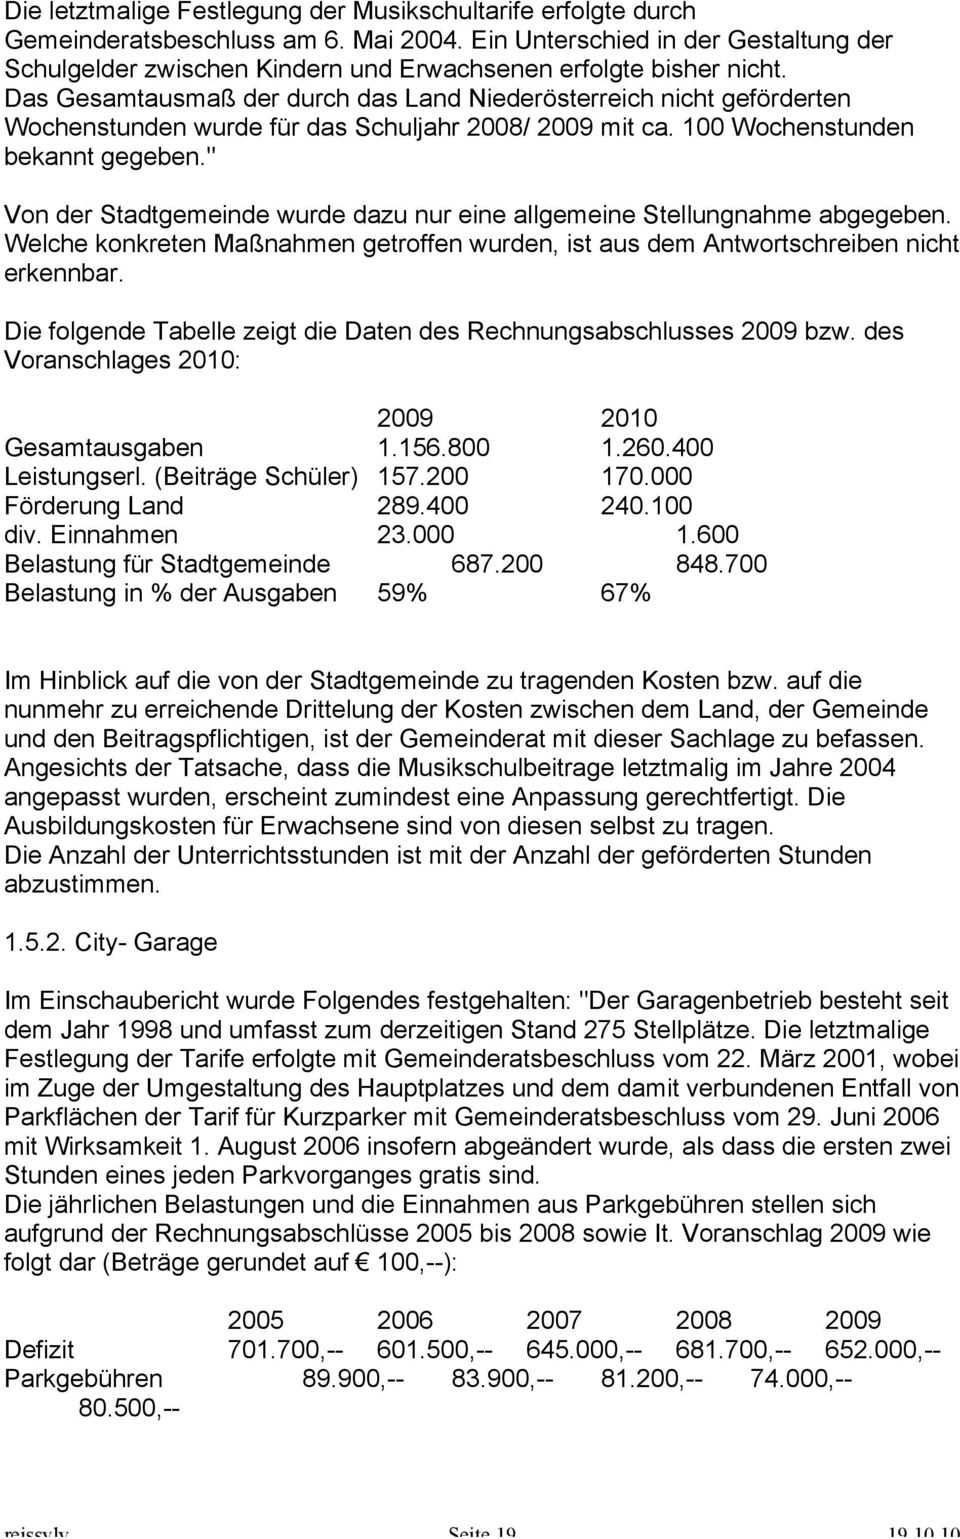 Das Gesamtausmaß der durch das Land Niederösterreich nicht geförderten Wochenstunden wurde für das Schuljahr 2008/ 2009 mit ca. 100 Wochenstunden bekannt gegeben.